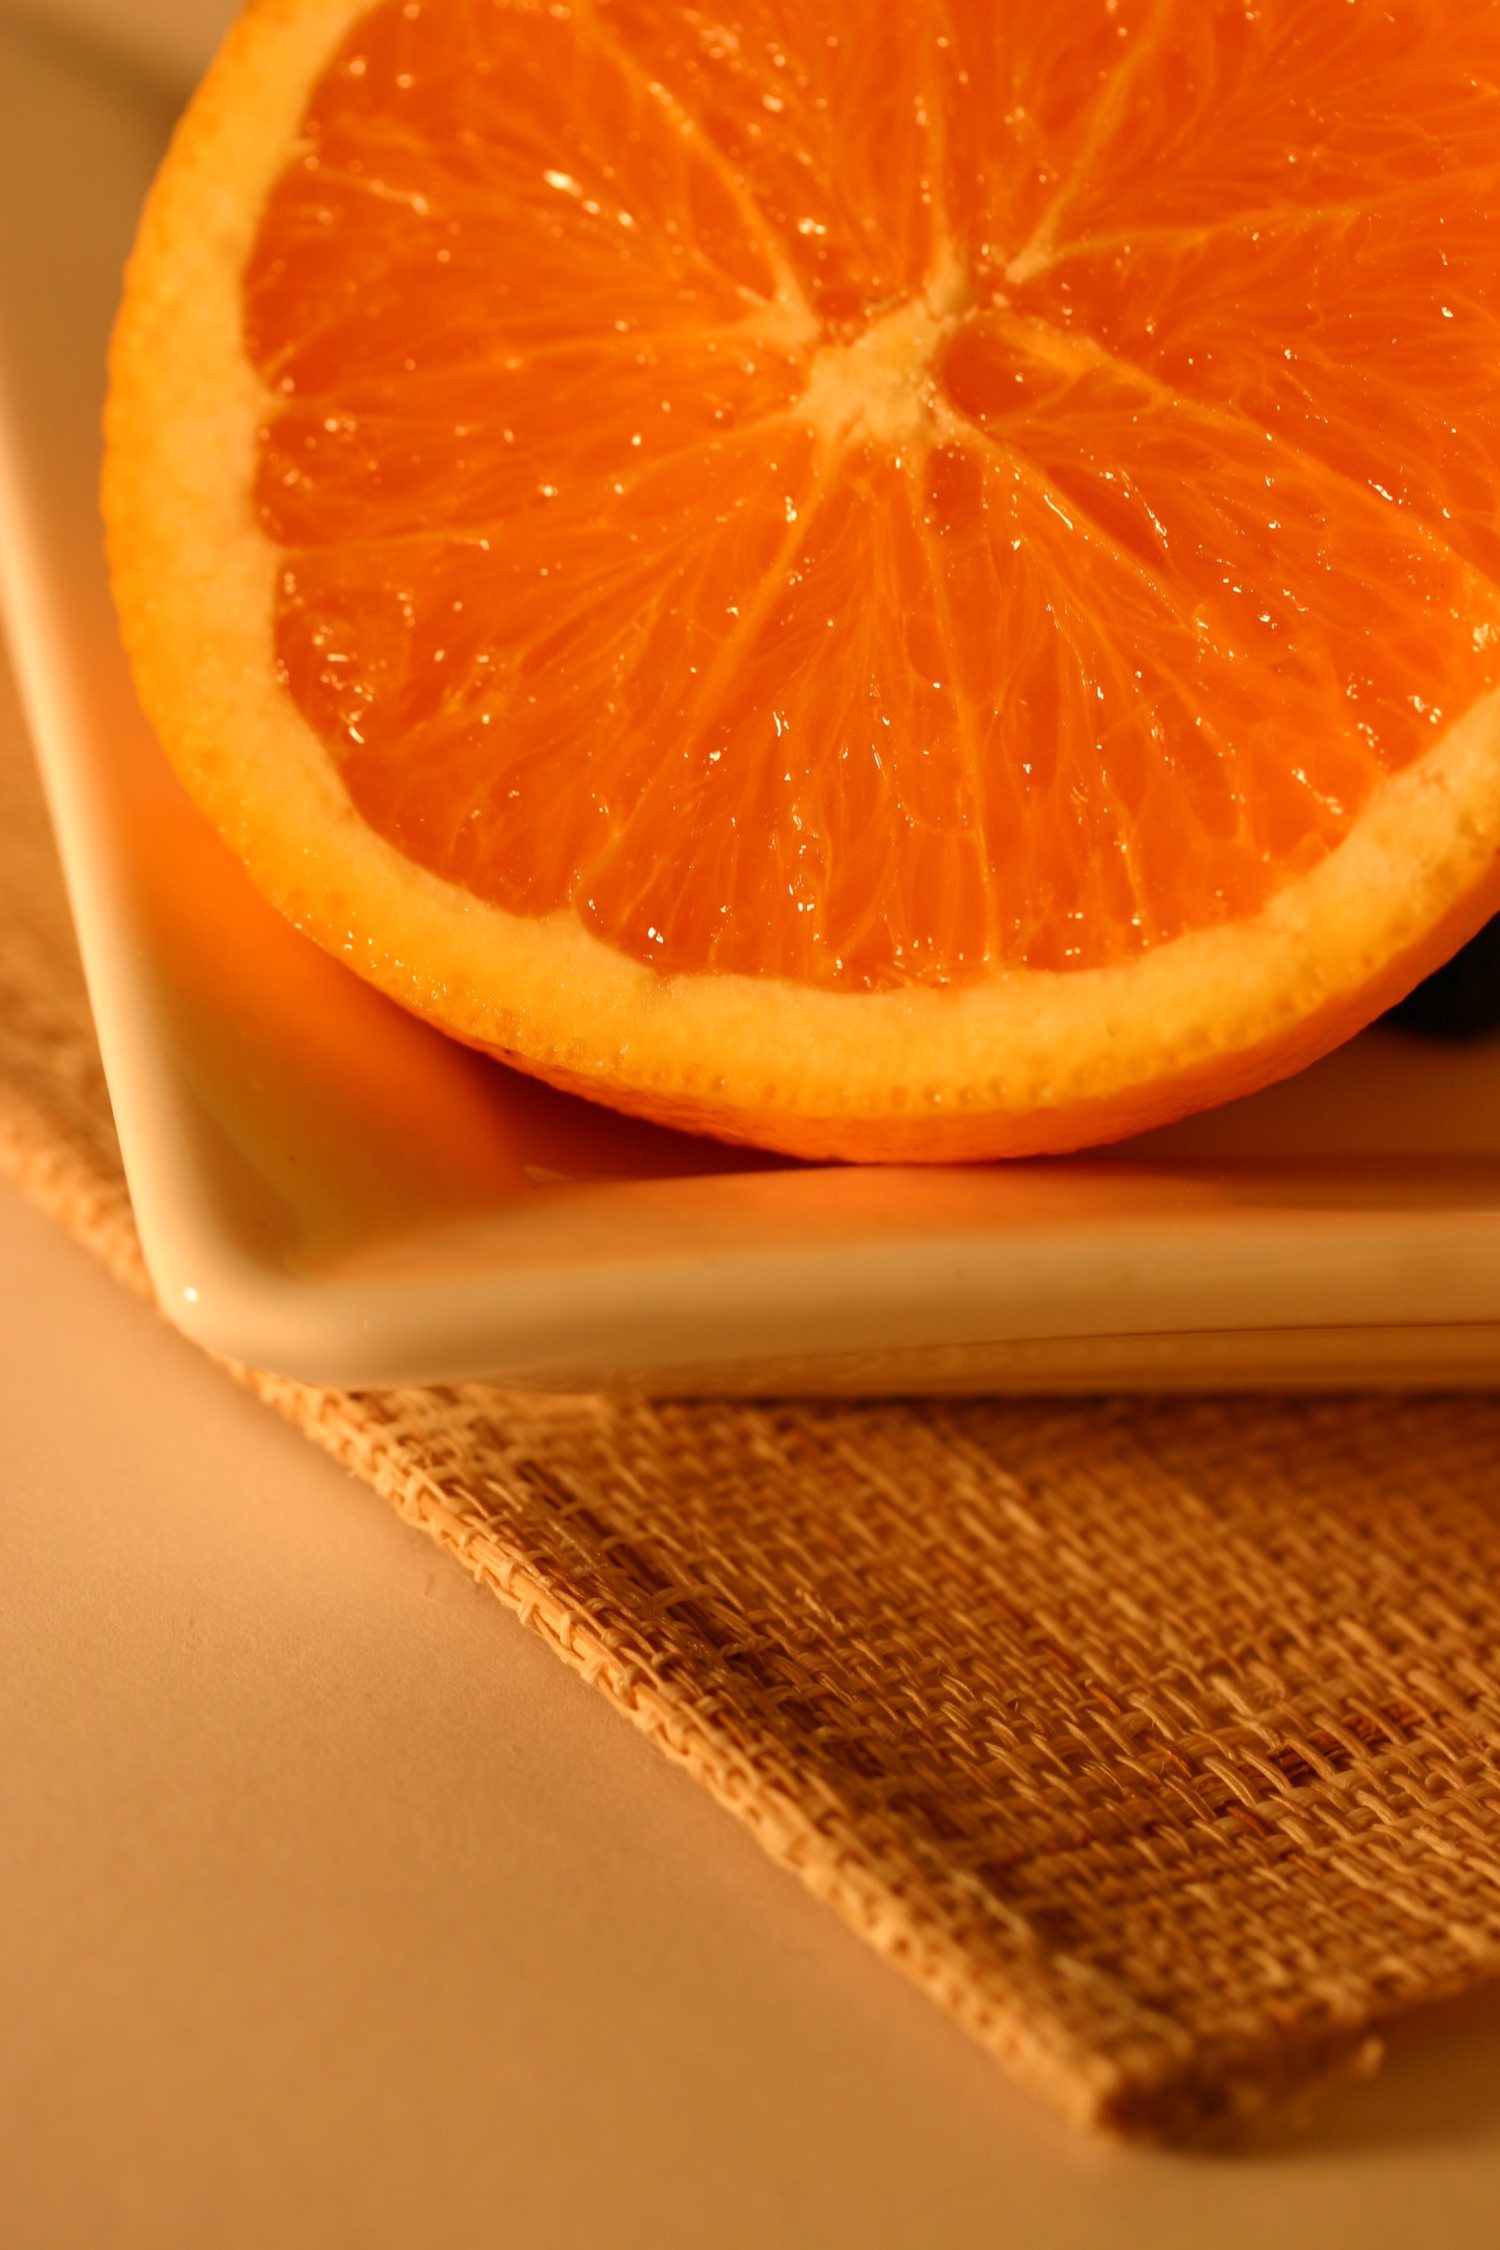 oranges photo